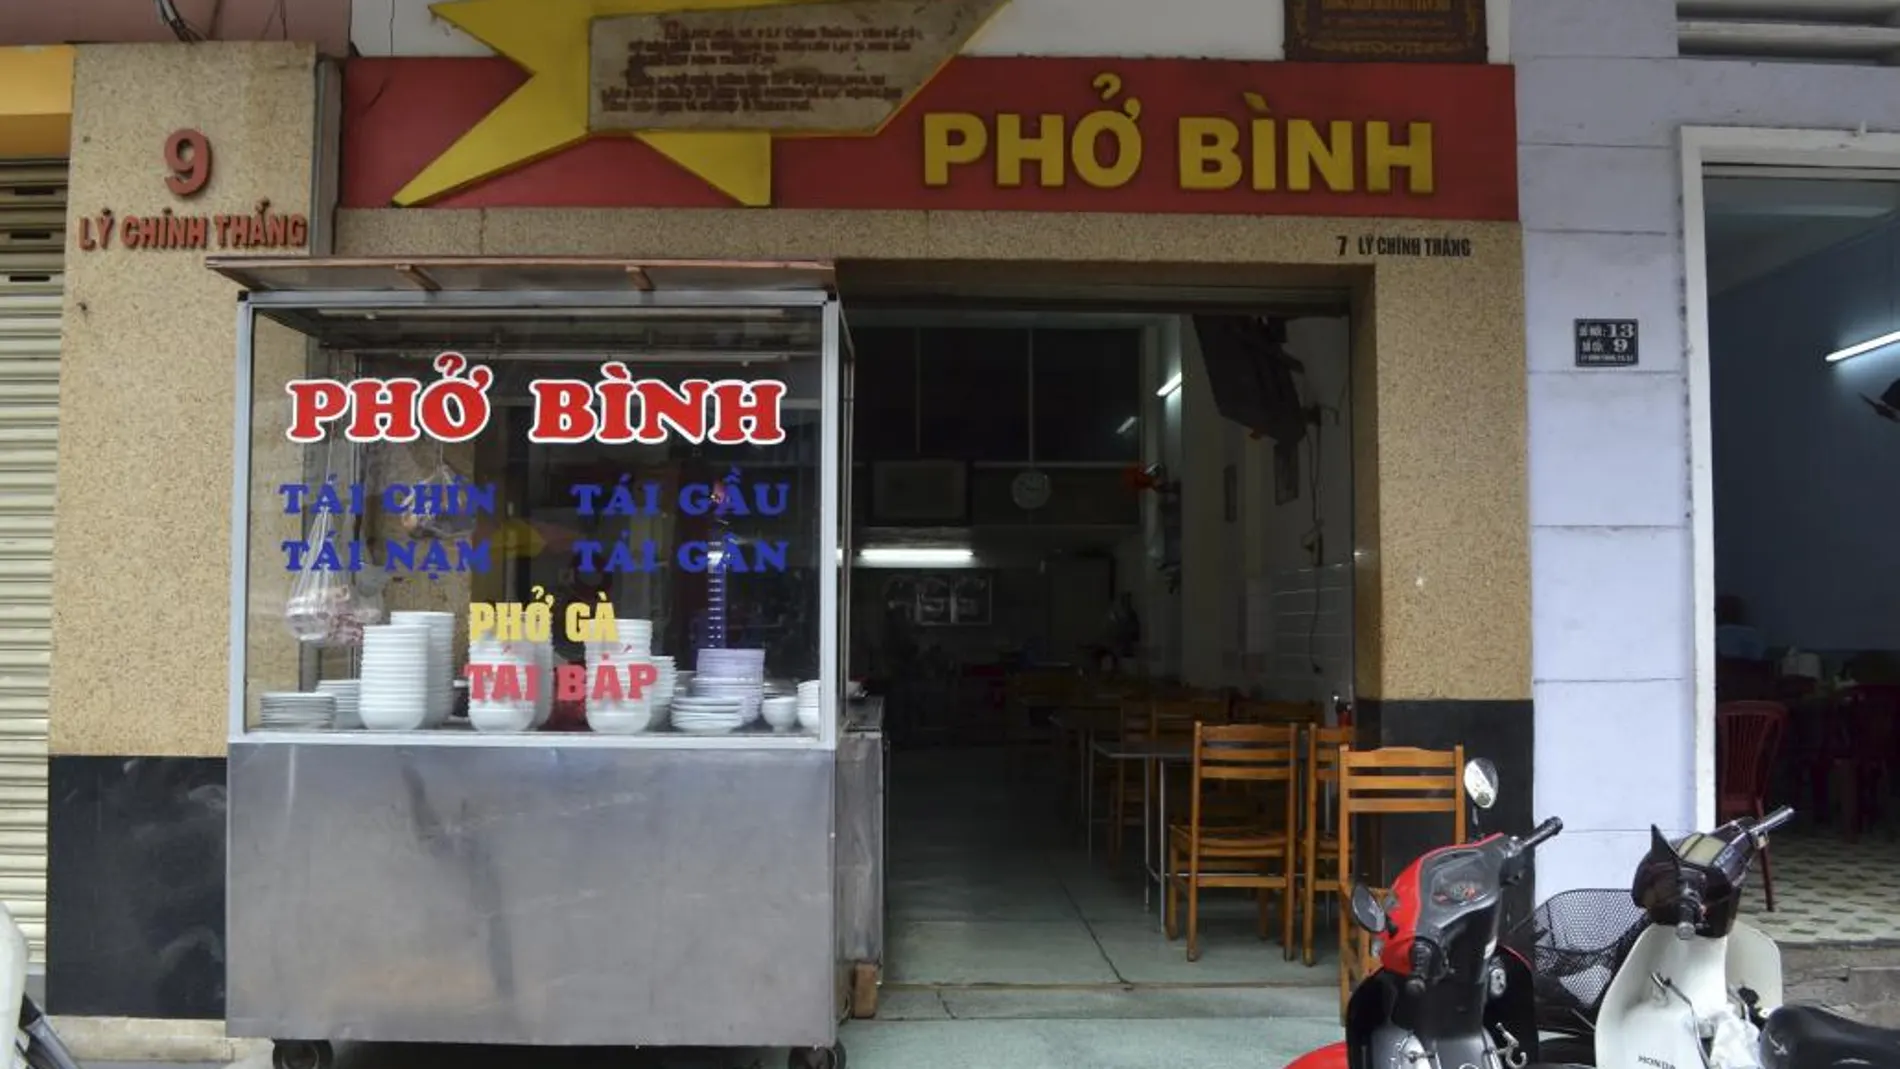 El humilde restaurante Pho Binh donde se planeó parte de la Ofensiva del Tet, uno de los episodios más decisivos de la Guerra de Vietnam